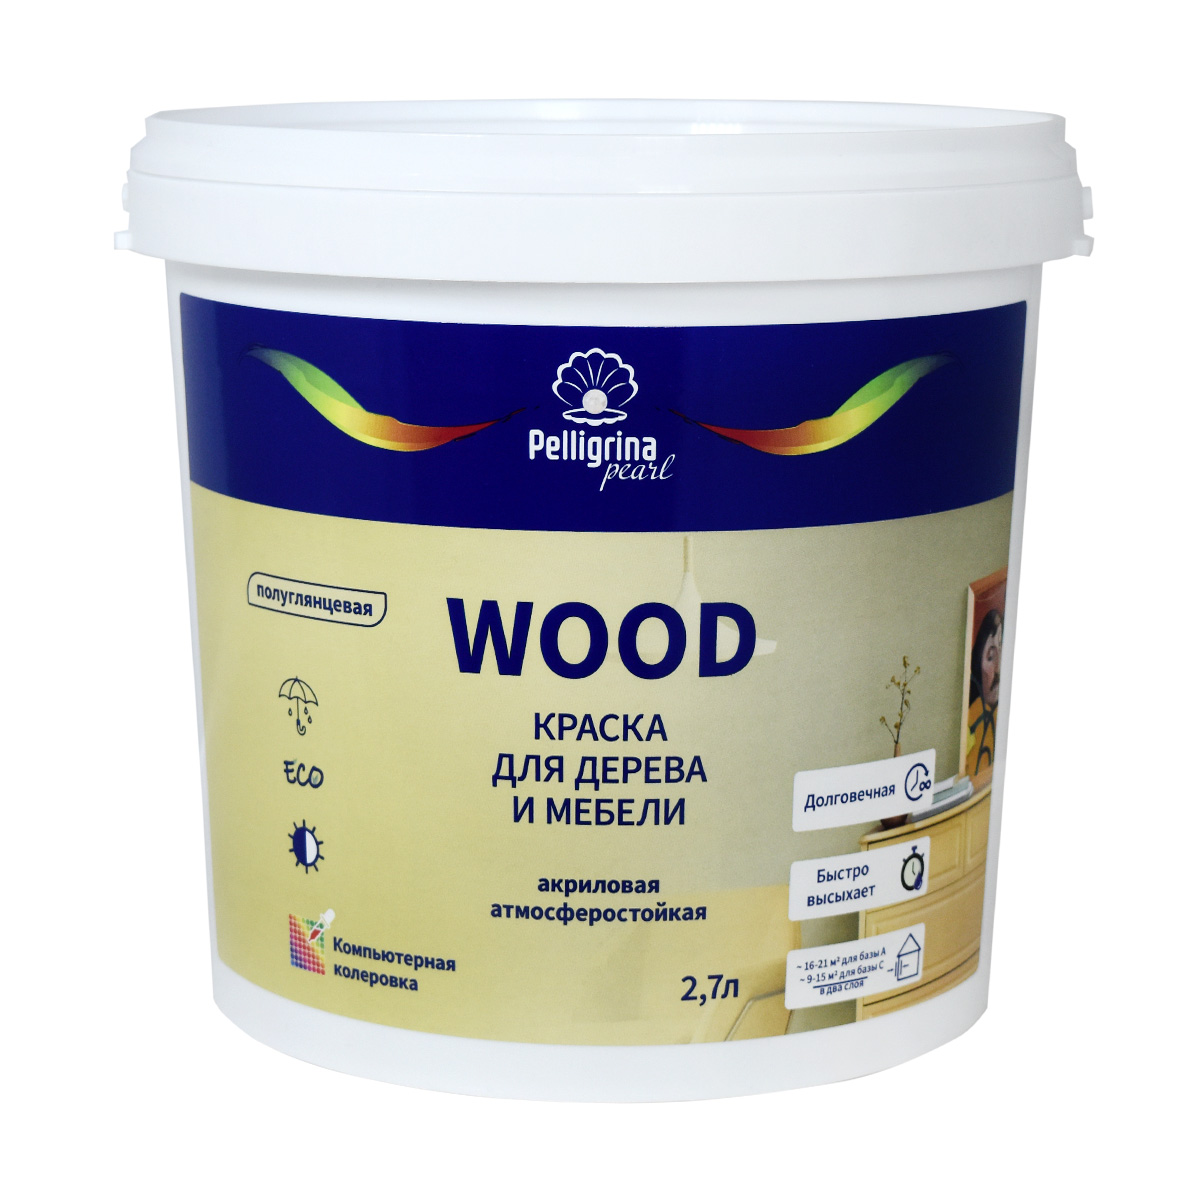 Краска для дерева и мебели Pelligrina Pearl Wood, акриловая, база С, бесцветная, 2,7 л усиленная смывка для краски с дерева telakka wood pro 5 кг